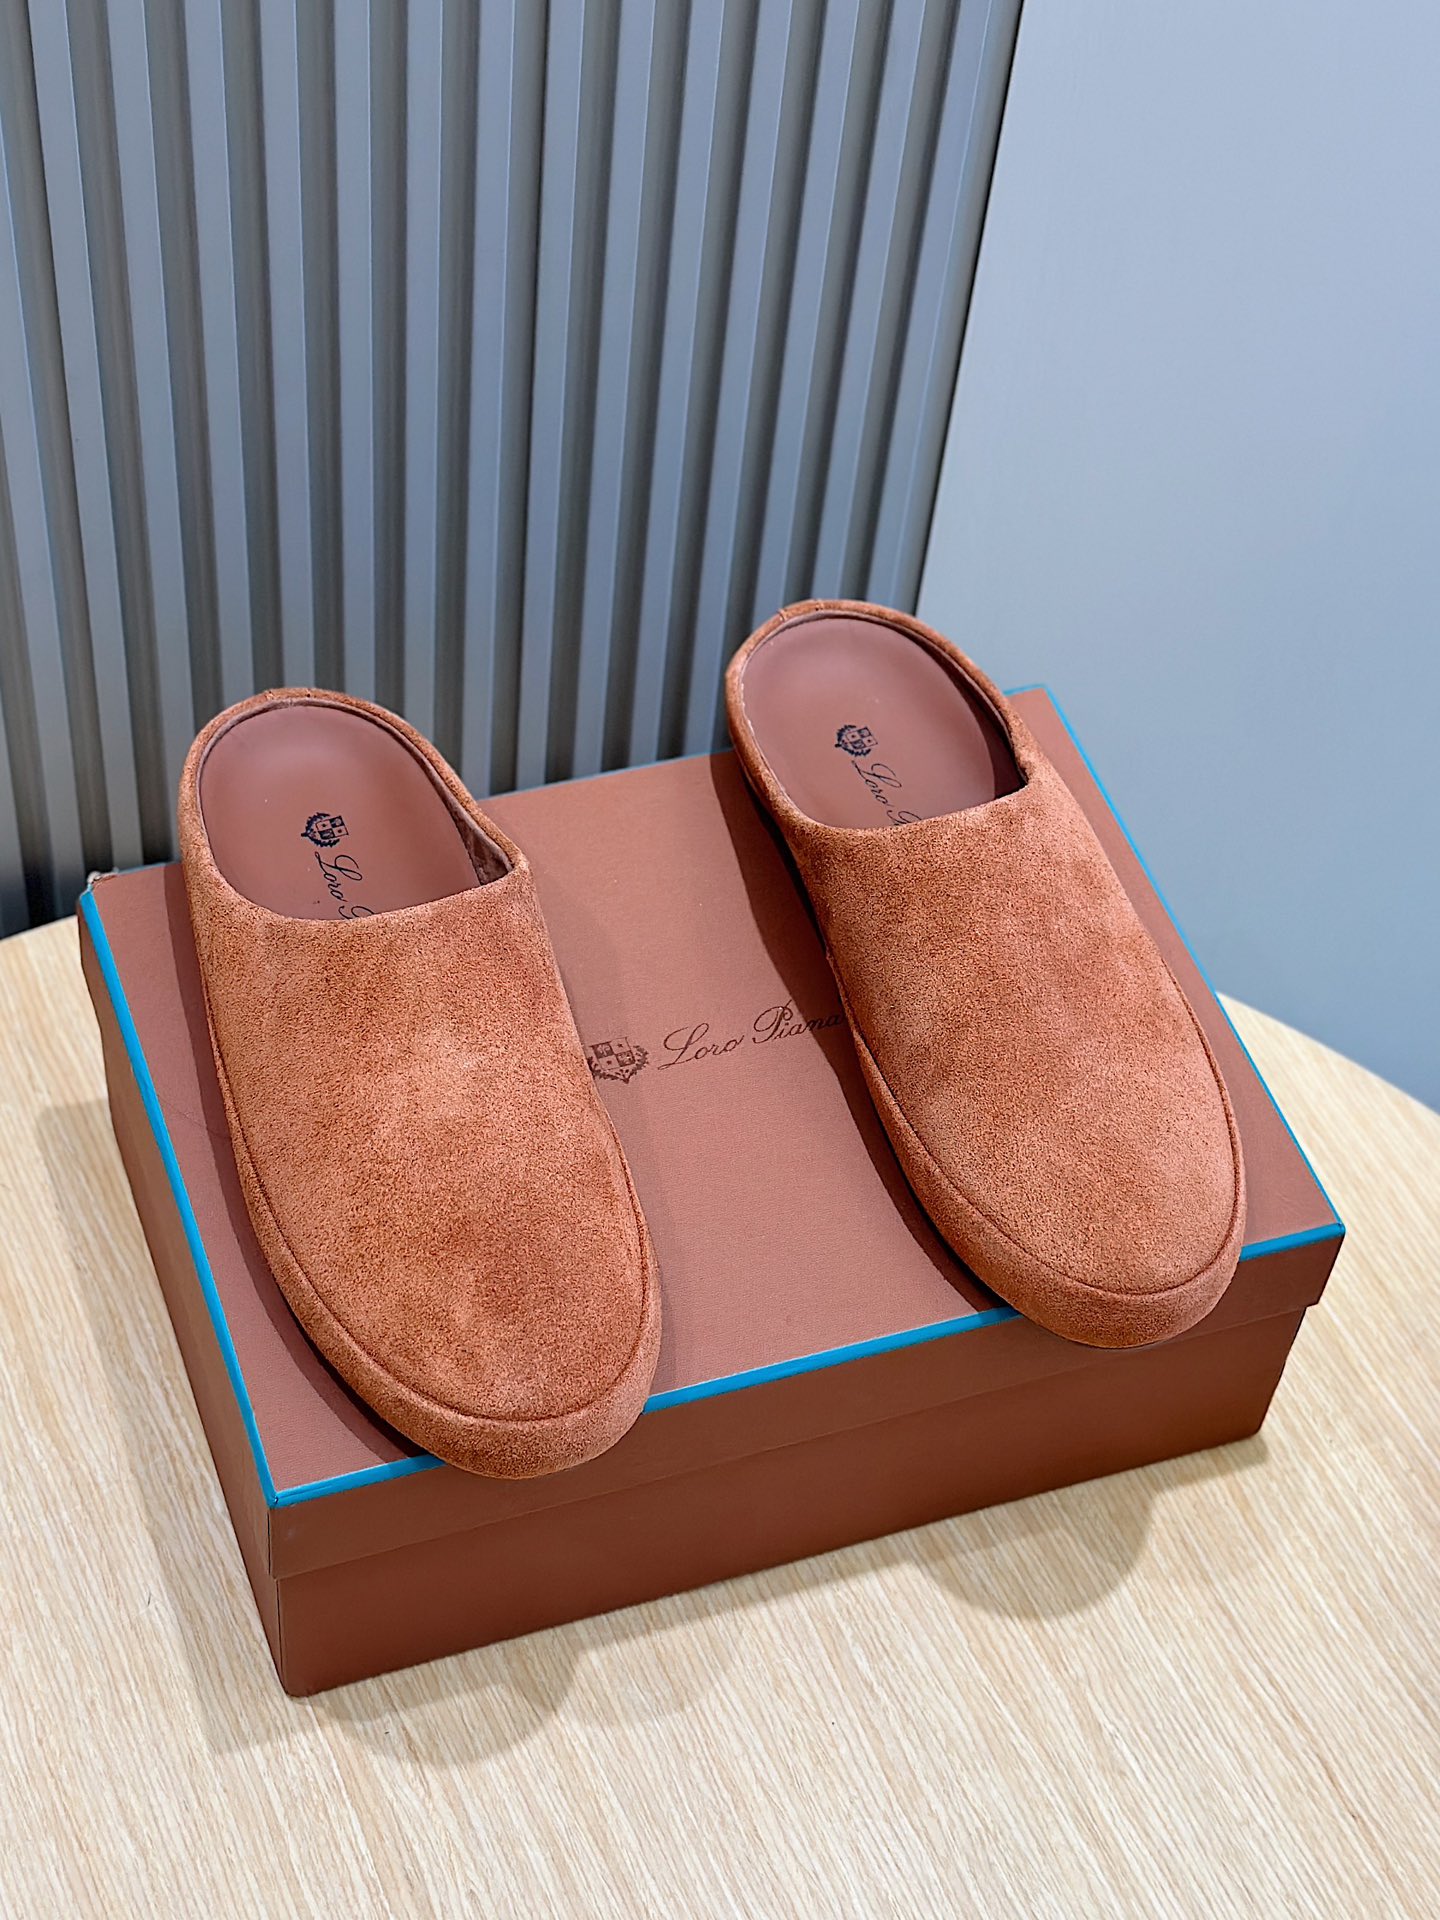 Loro Piana חלק עליון
 נעליים נעלי בית קיץ קנו העתק באיכות הטובה ביותר
 קווייד Lambskin גומא עור כבשים רגיל